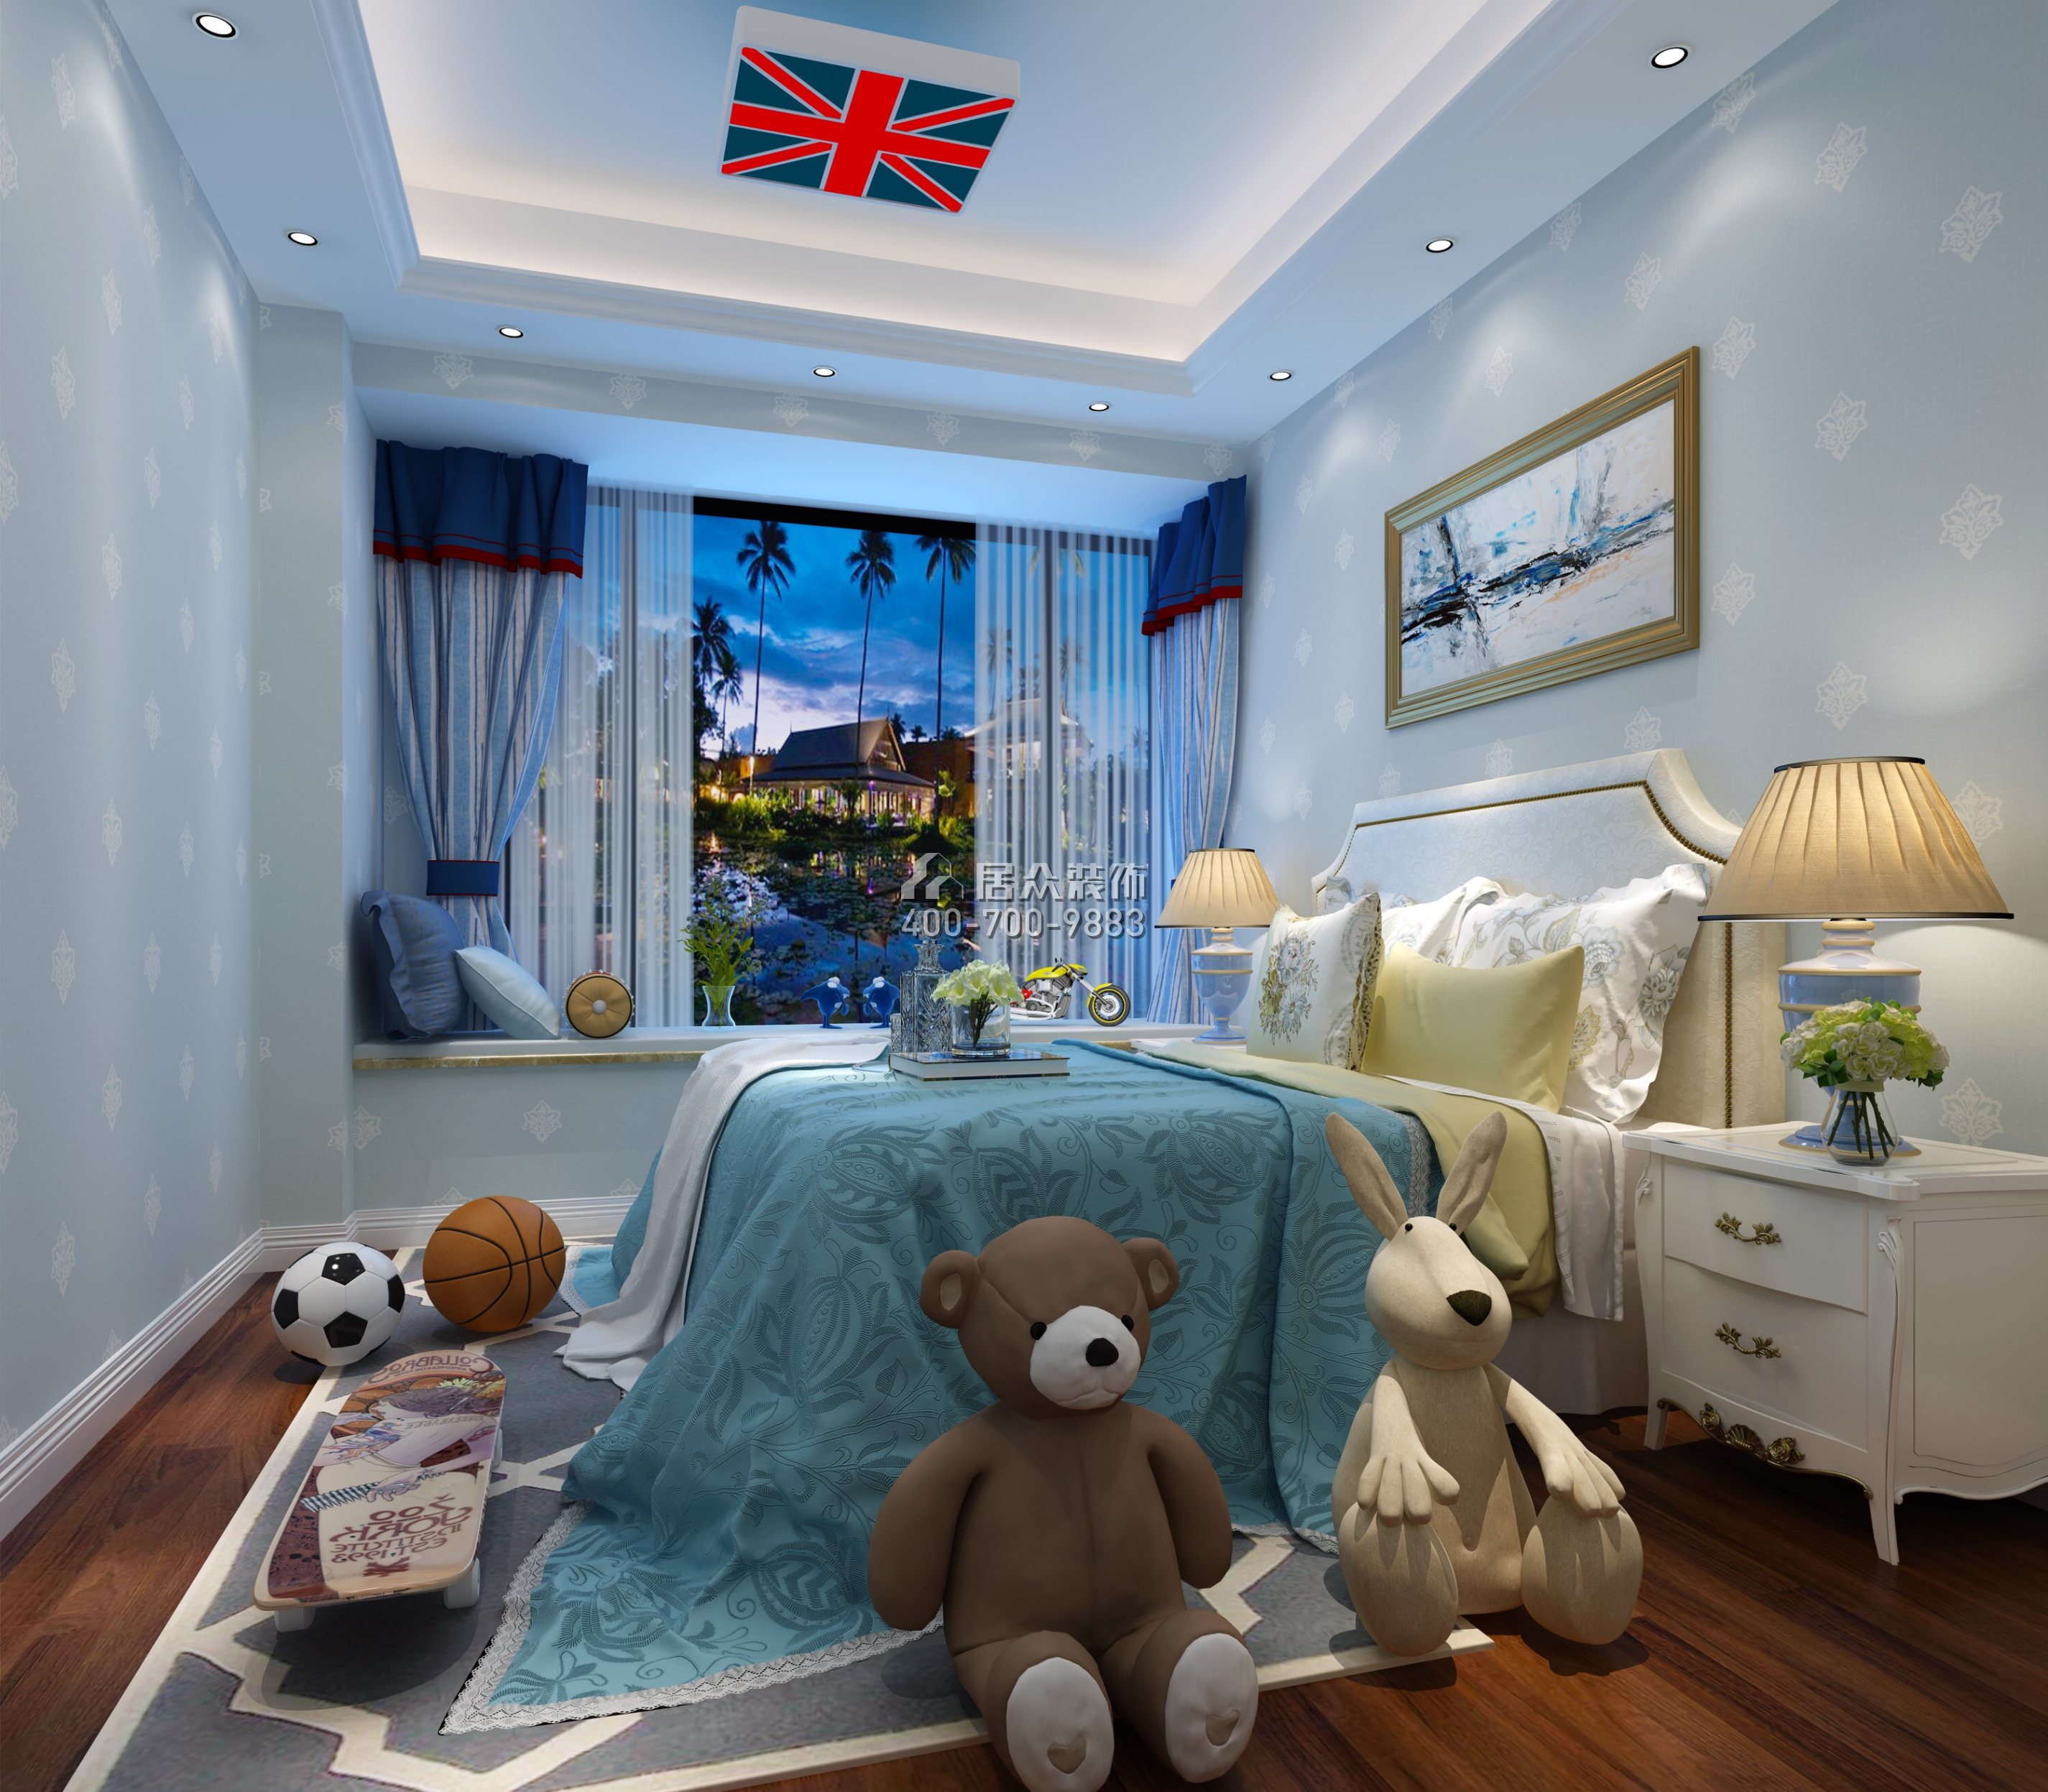 碧海君庭160平方米新古典风格平层户型卧室装修效果图